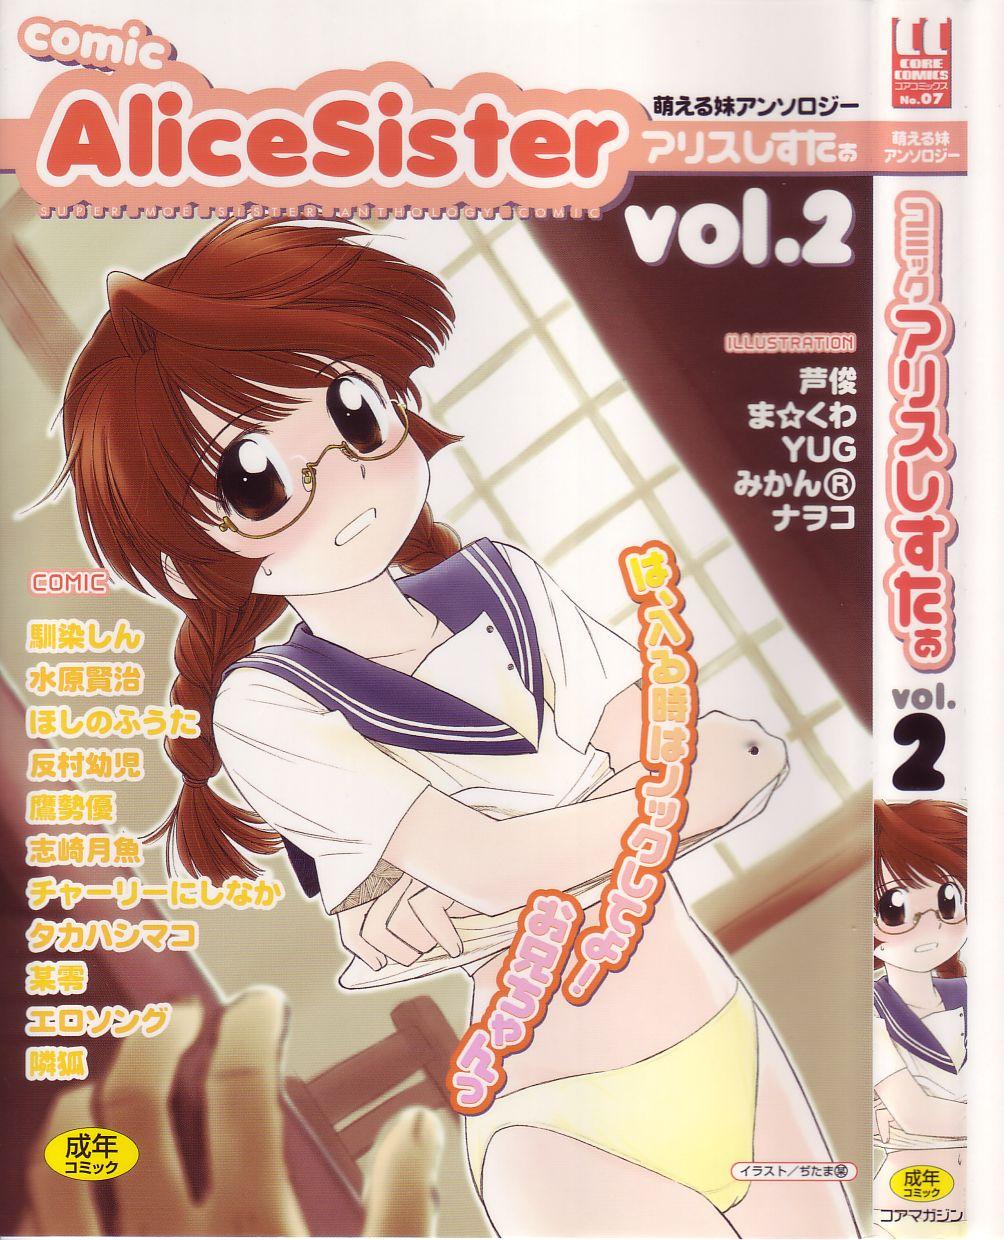 Comic Alice Sister Vol.2 0